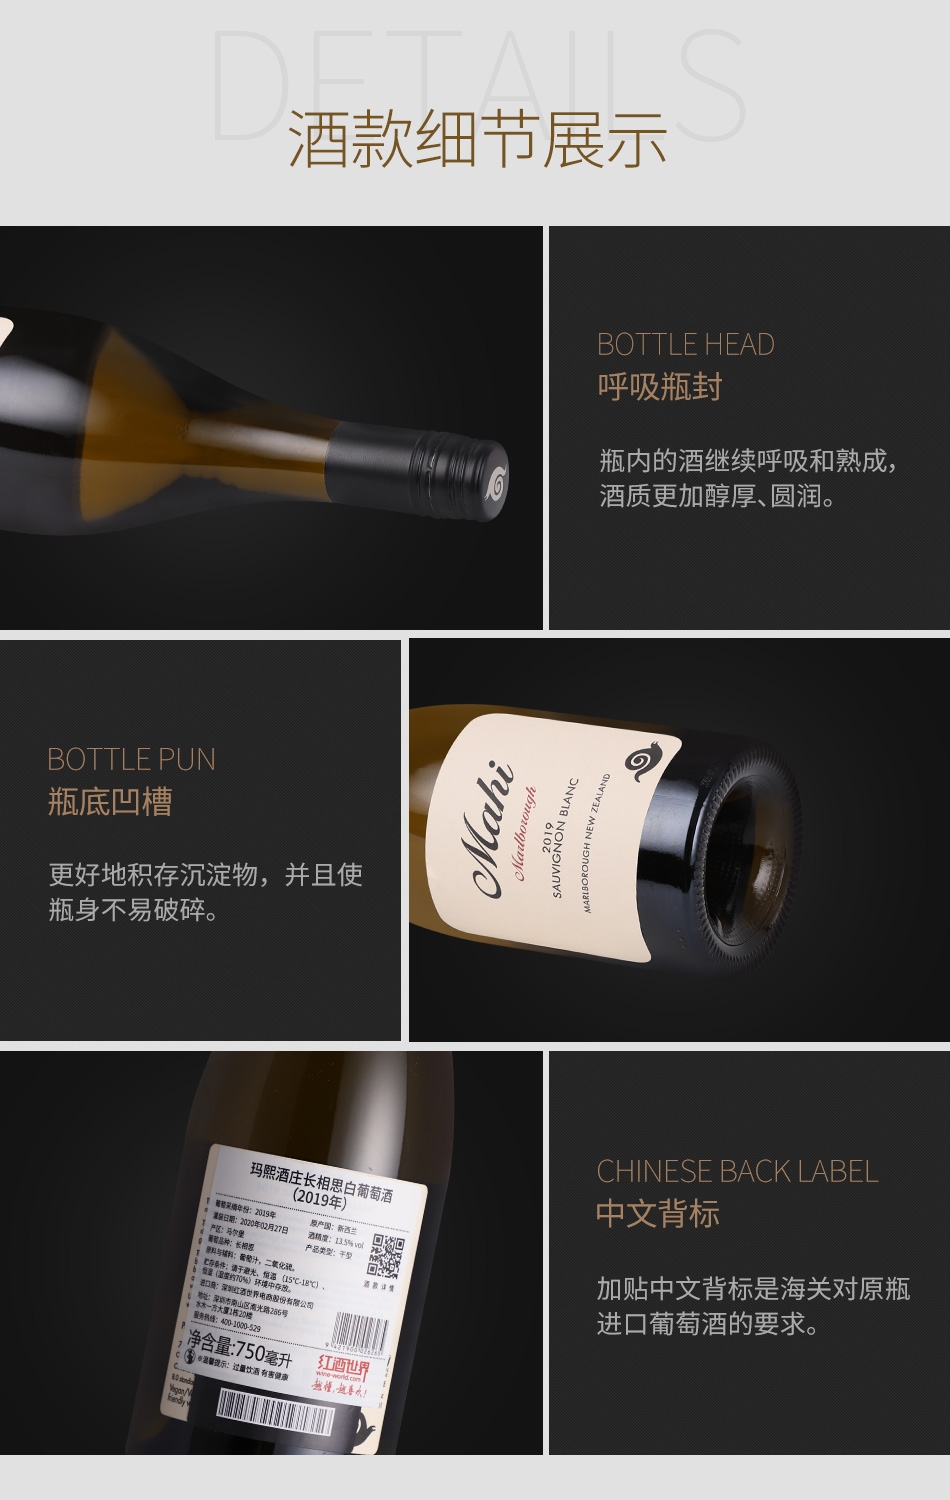 2019年玛熙酒庄长相思白葡萄酒